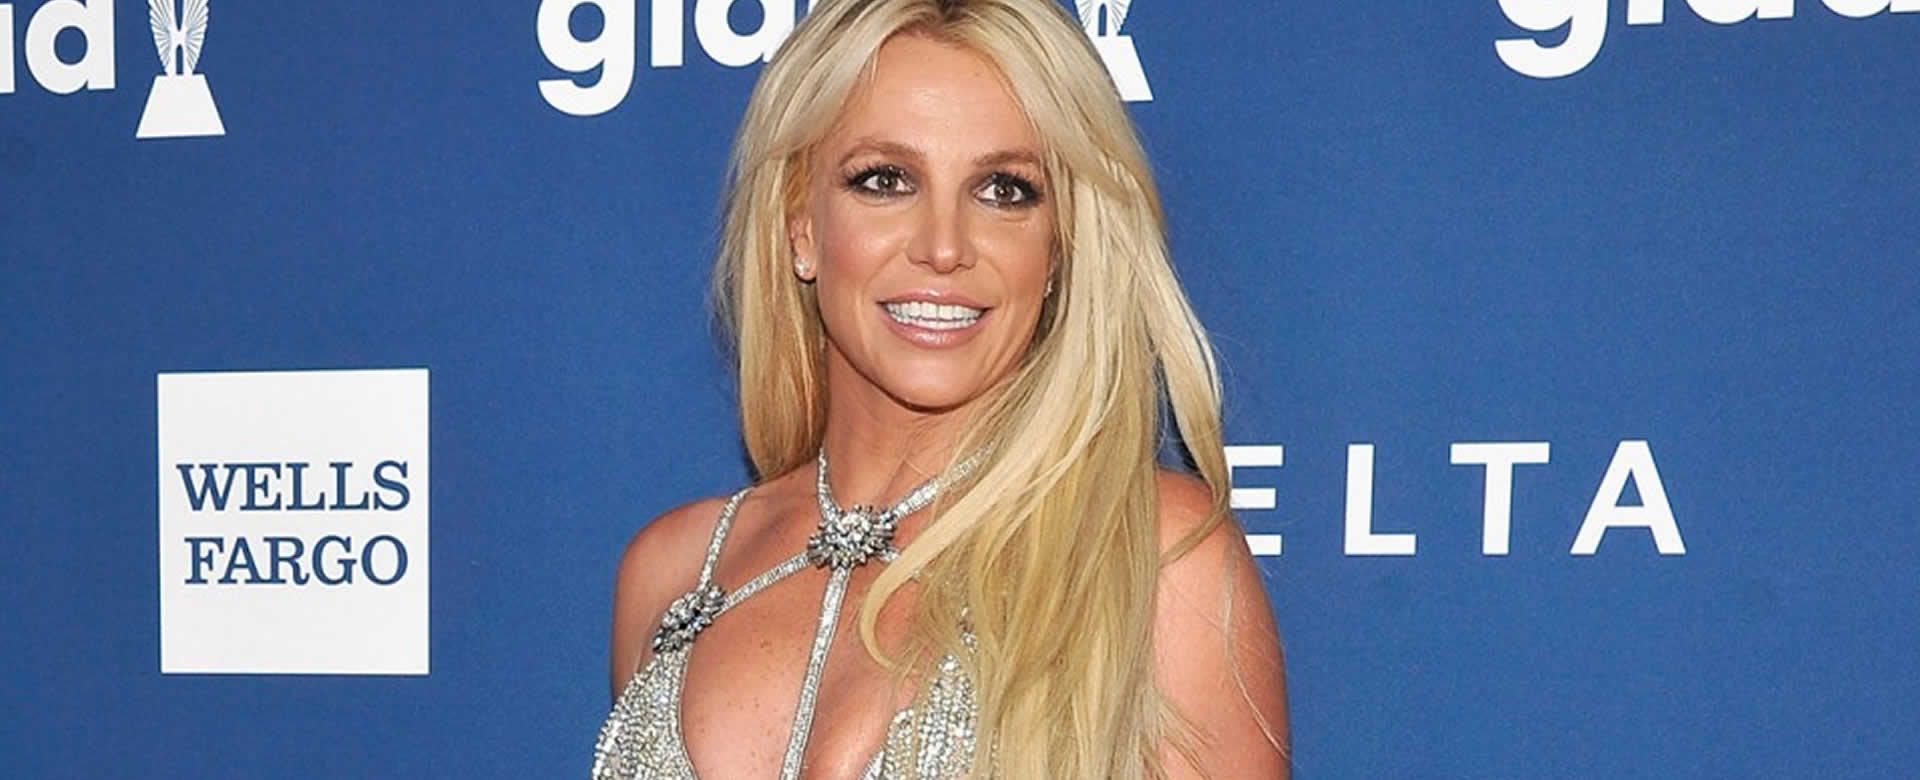 Britney Spears mueve sus caderas al ritmo de "Despacito" y sus fans quedan encantados